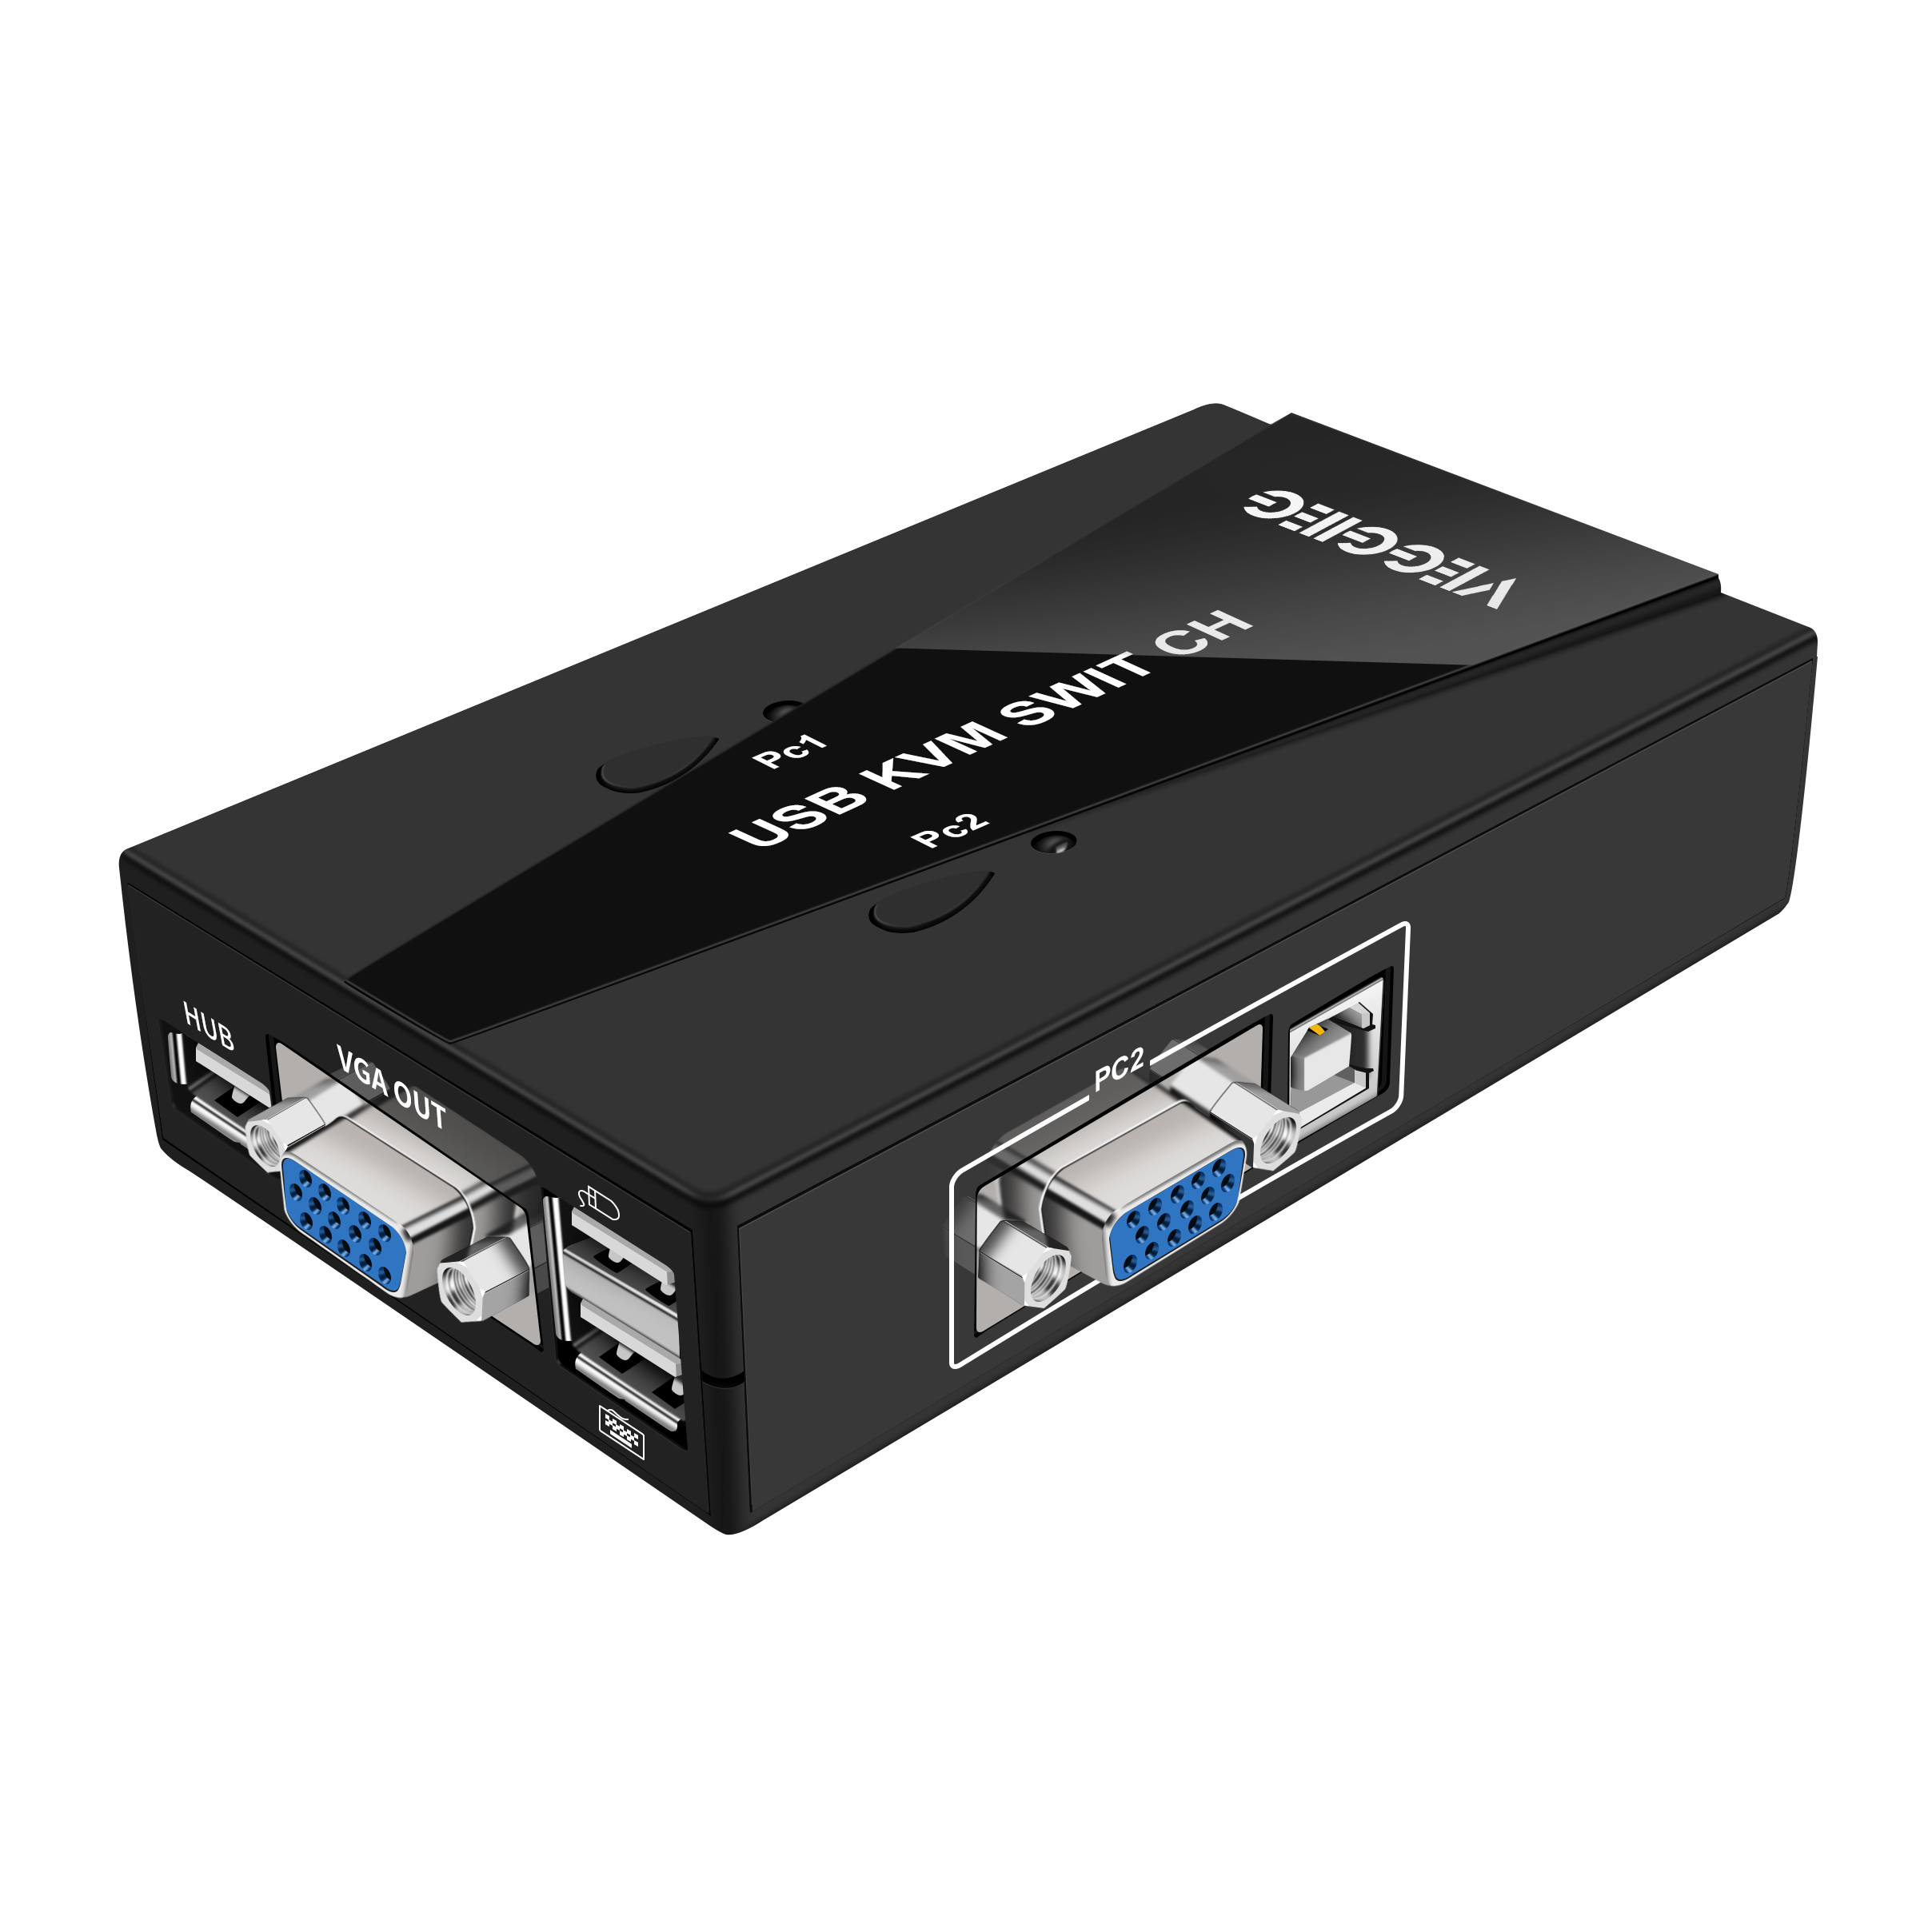 VEGGIEG USB VGA KVM-schakelkast 3-poort VGA-schakelaar Videodelingsadapter 2 in 1 uit Plug and Play